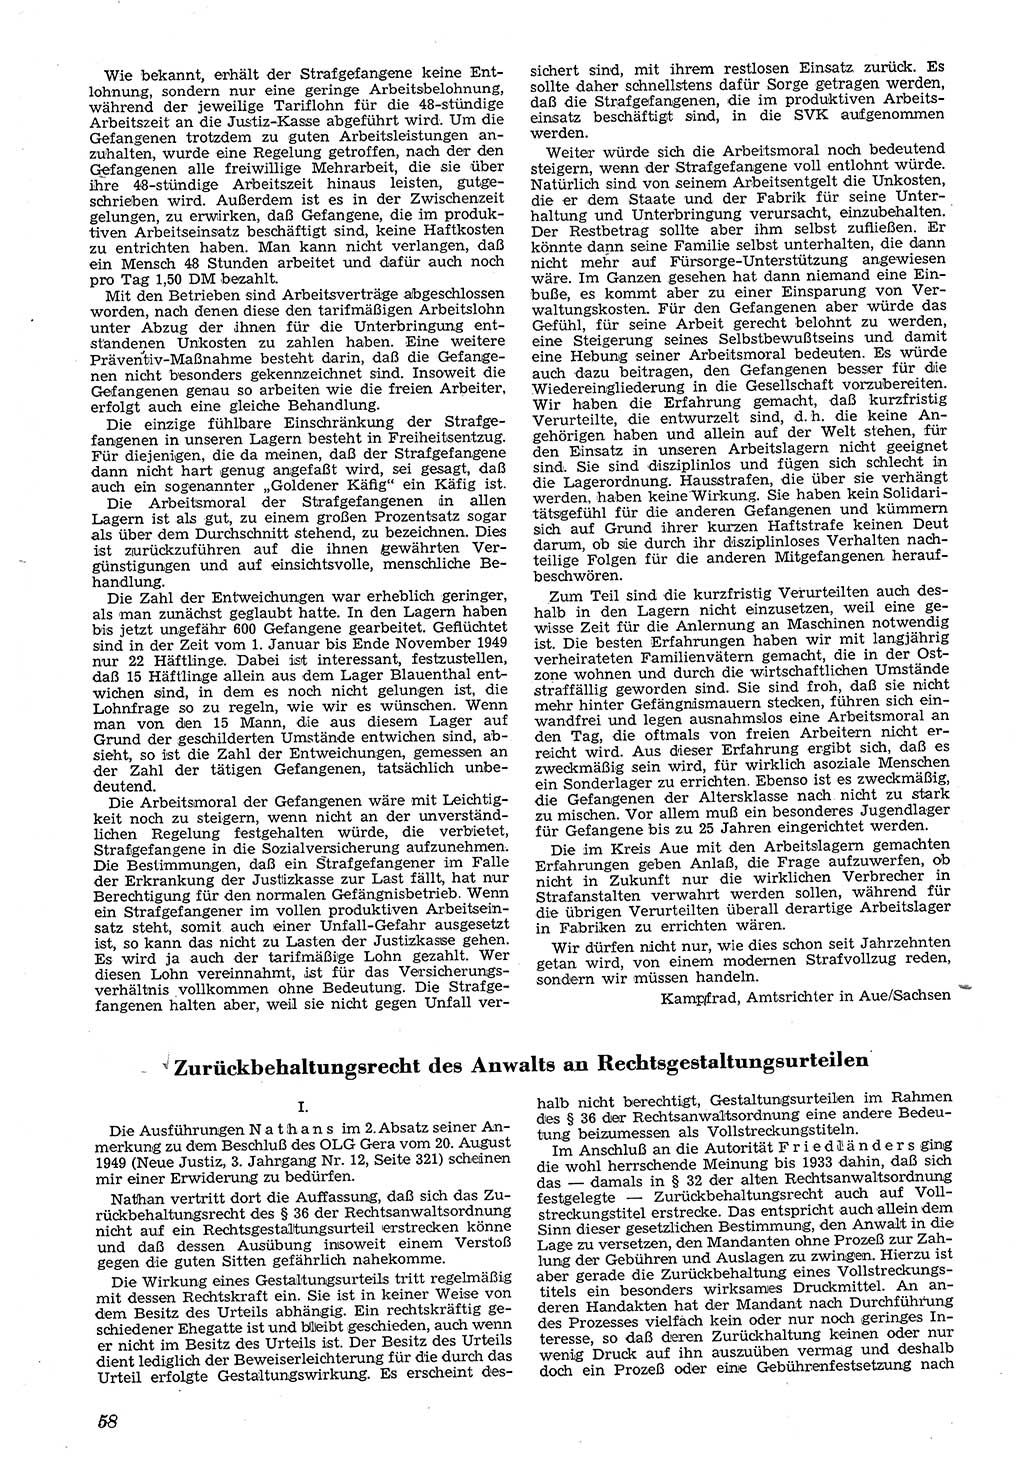 Neue Justiz (NJ), Zeitschrift für Recht und Rechtswissenschaft [Deutsche Demokratische Republik (DDR)], 4. Jahrgang 1950, Seite 58 (NJ DDR 1950, S. 58)